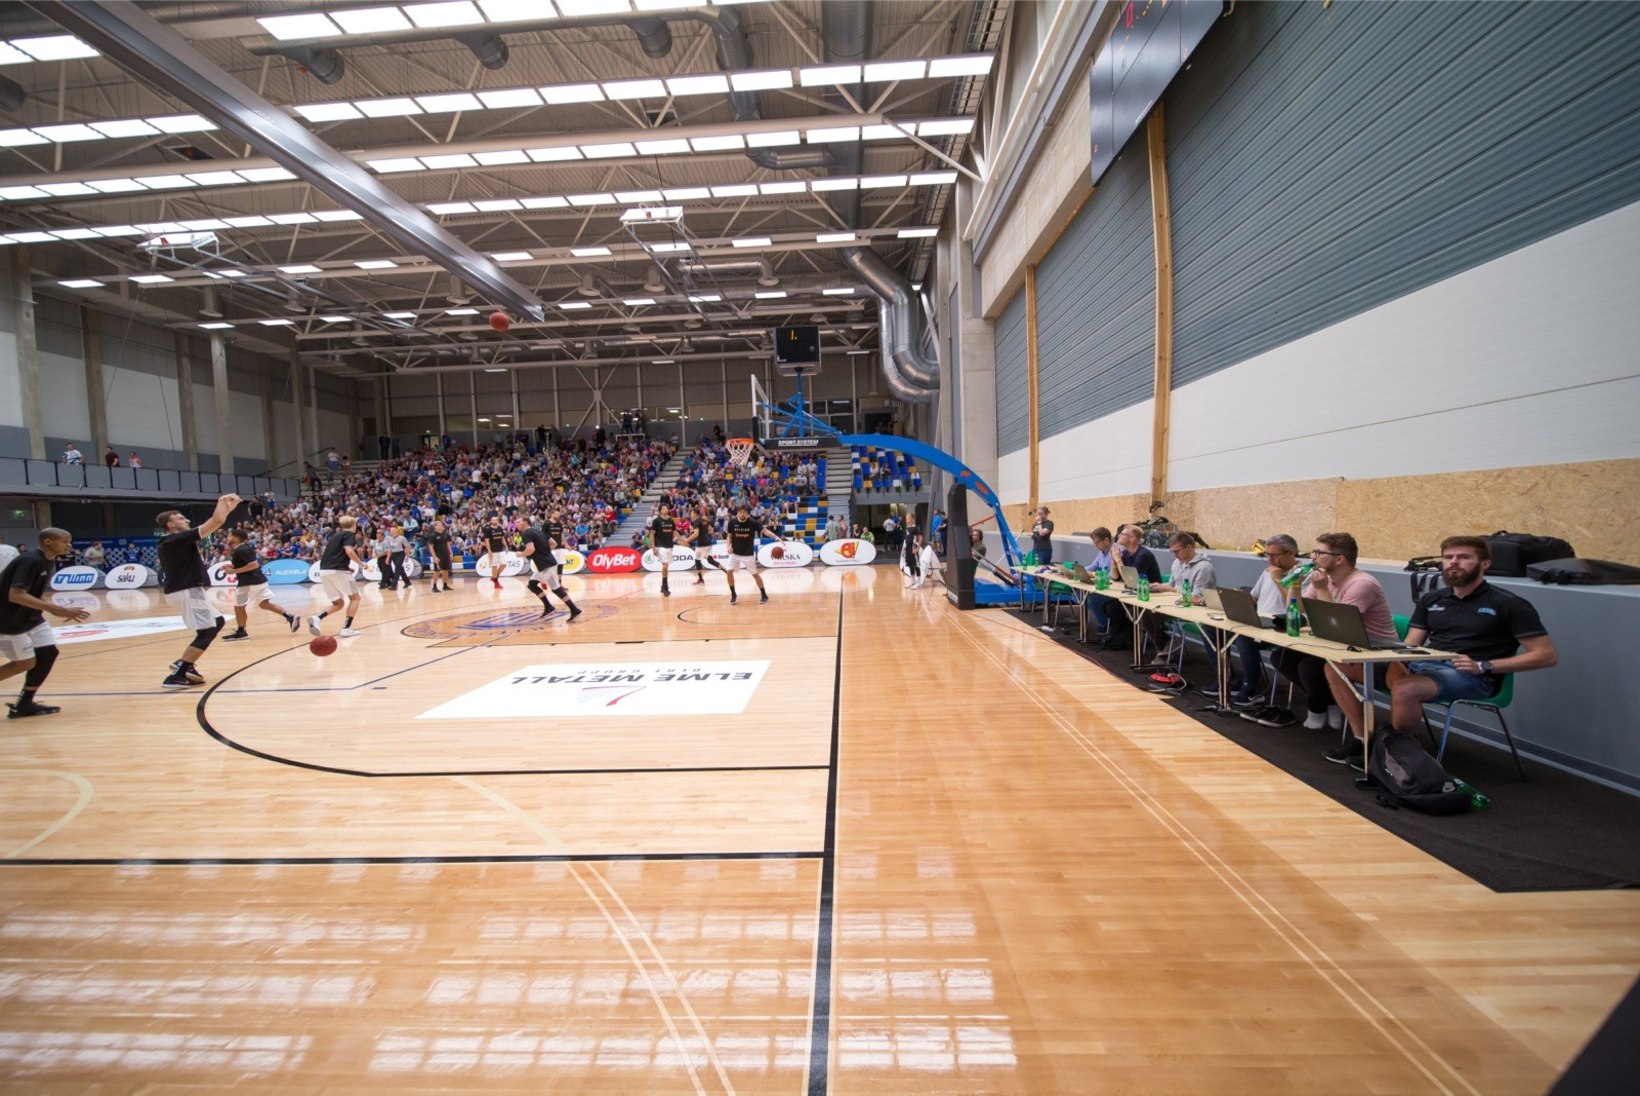 FOTOD | Vaata, milline näeb välja esimest suurt mängu võõrustav uus Tartu korvpallisaal